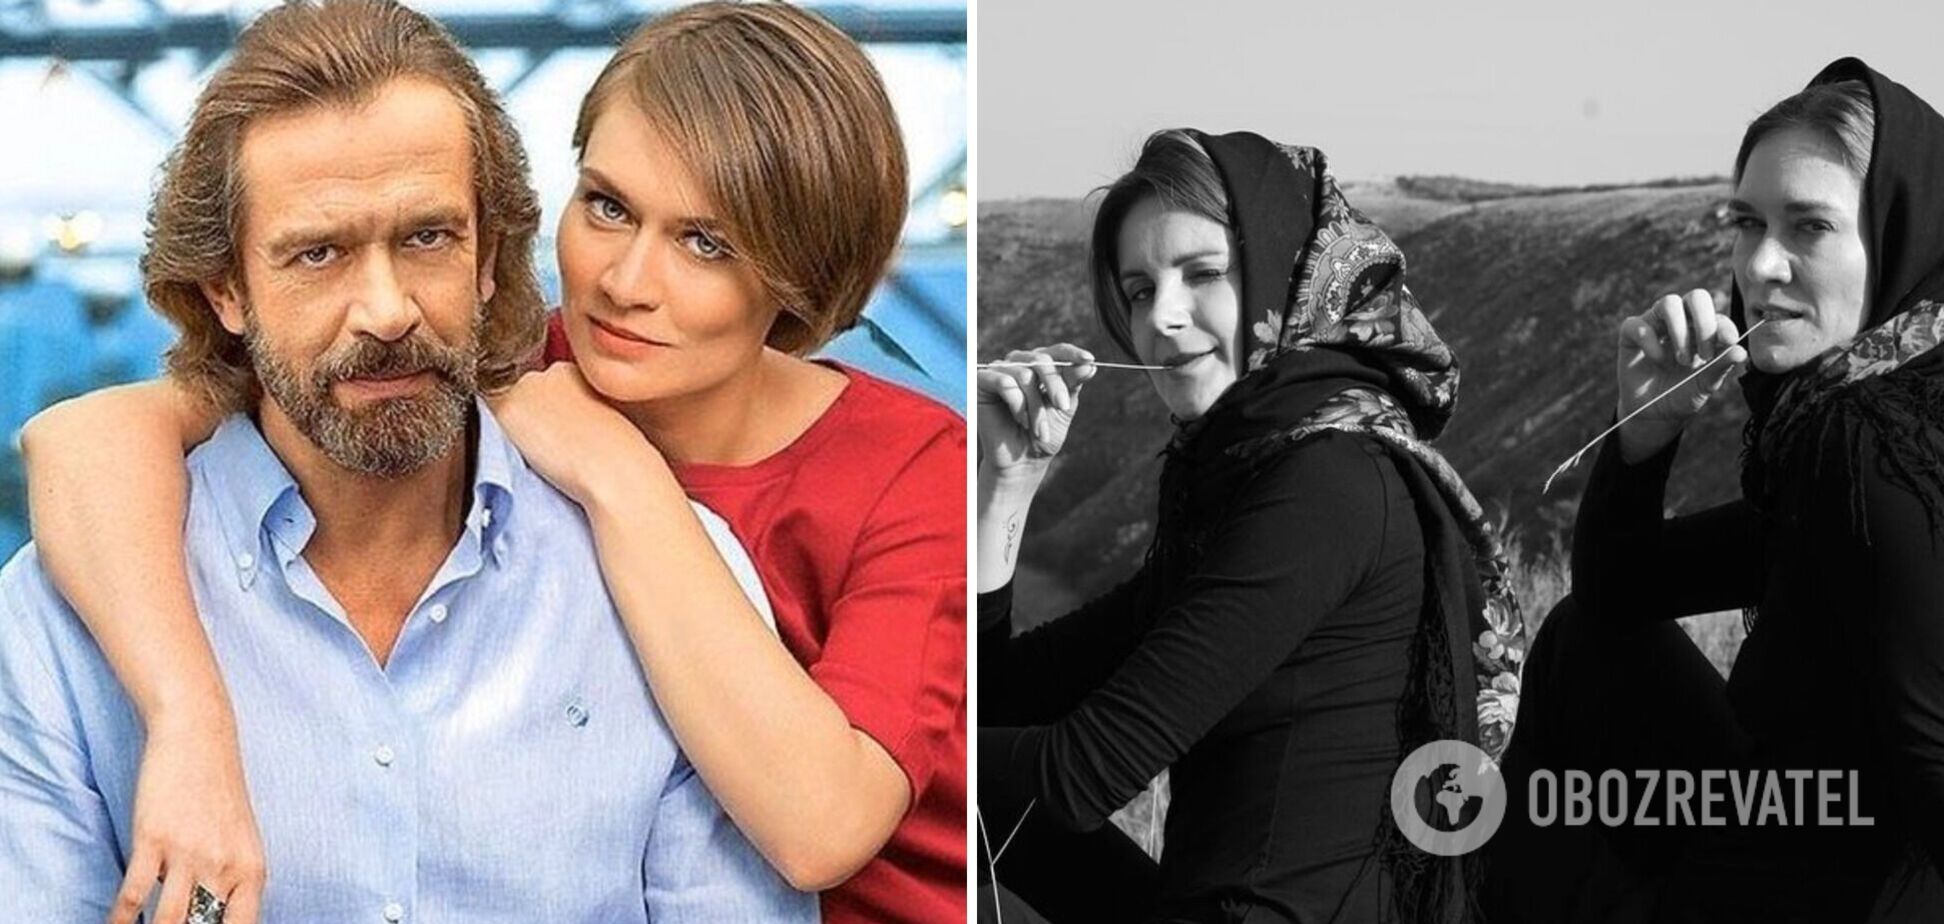 Дочка пропагандиста Машкова виклала в мережу спільні фото з сестрою Зеленською